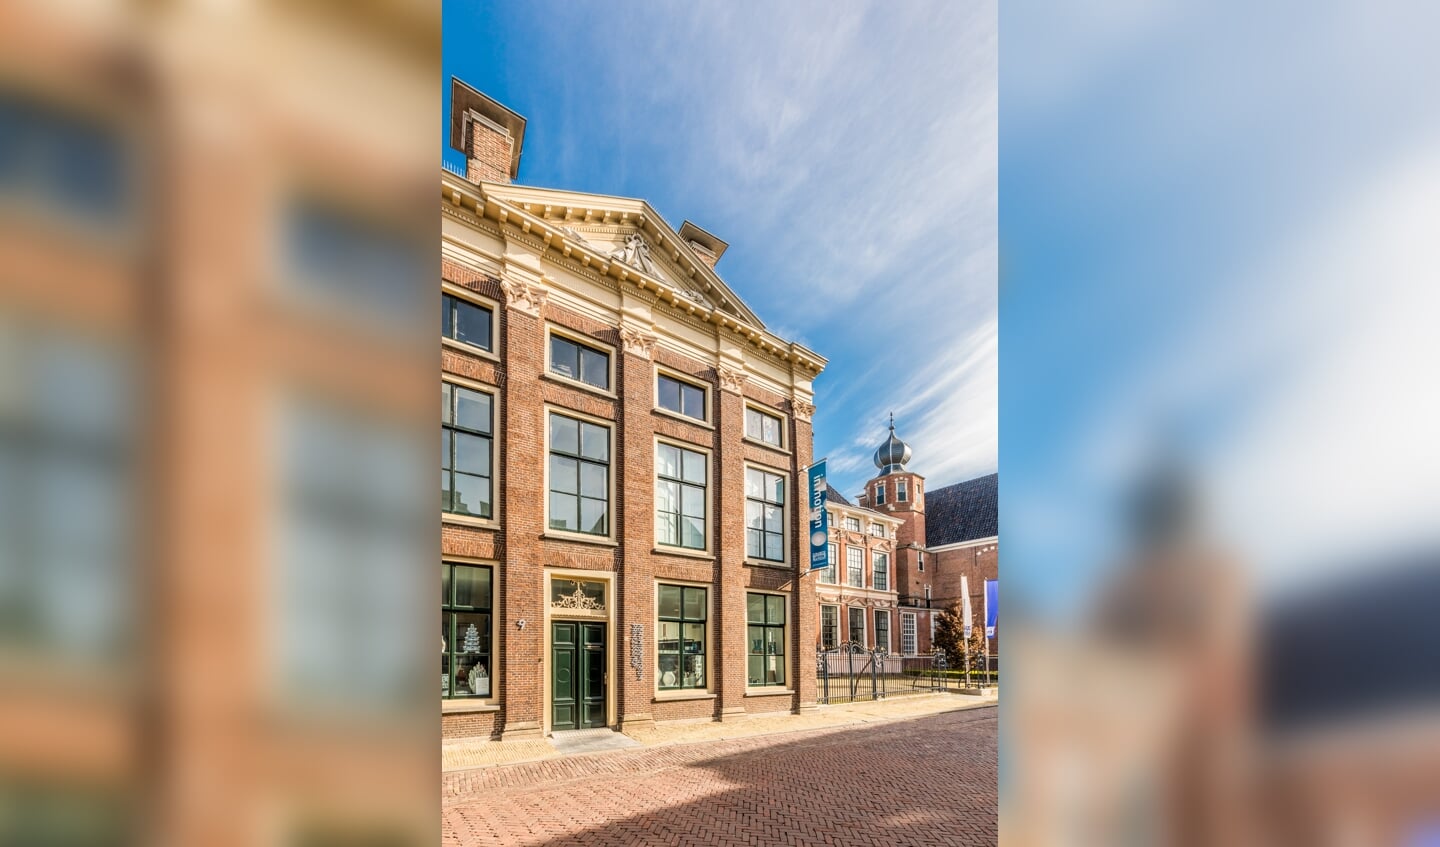 Keramiekmuseum Princessehof in Leeuwarden.